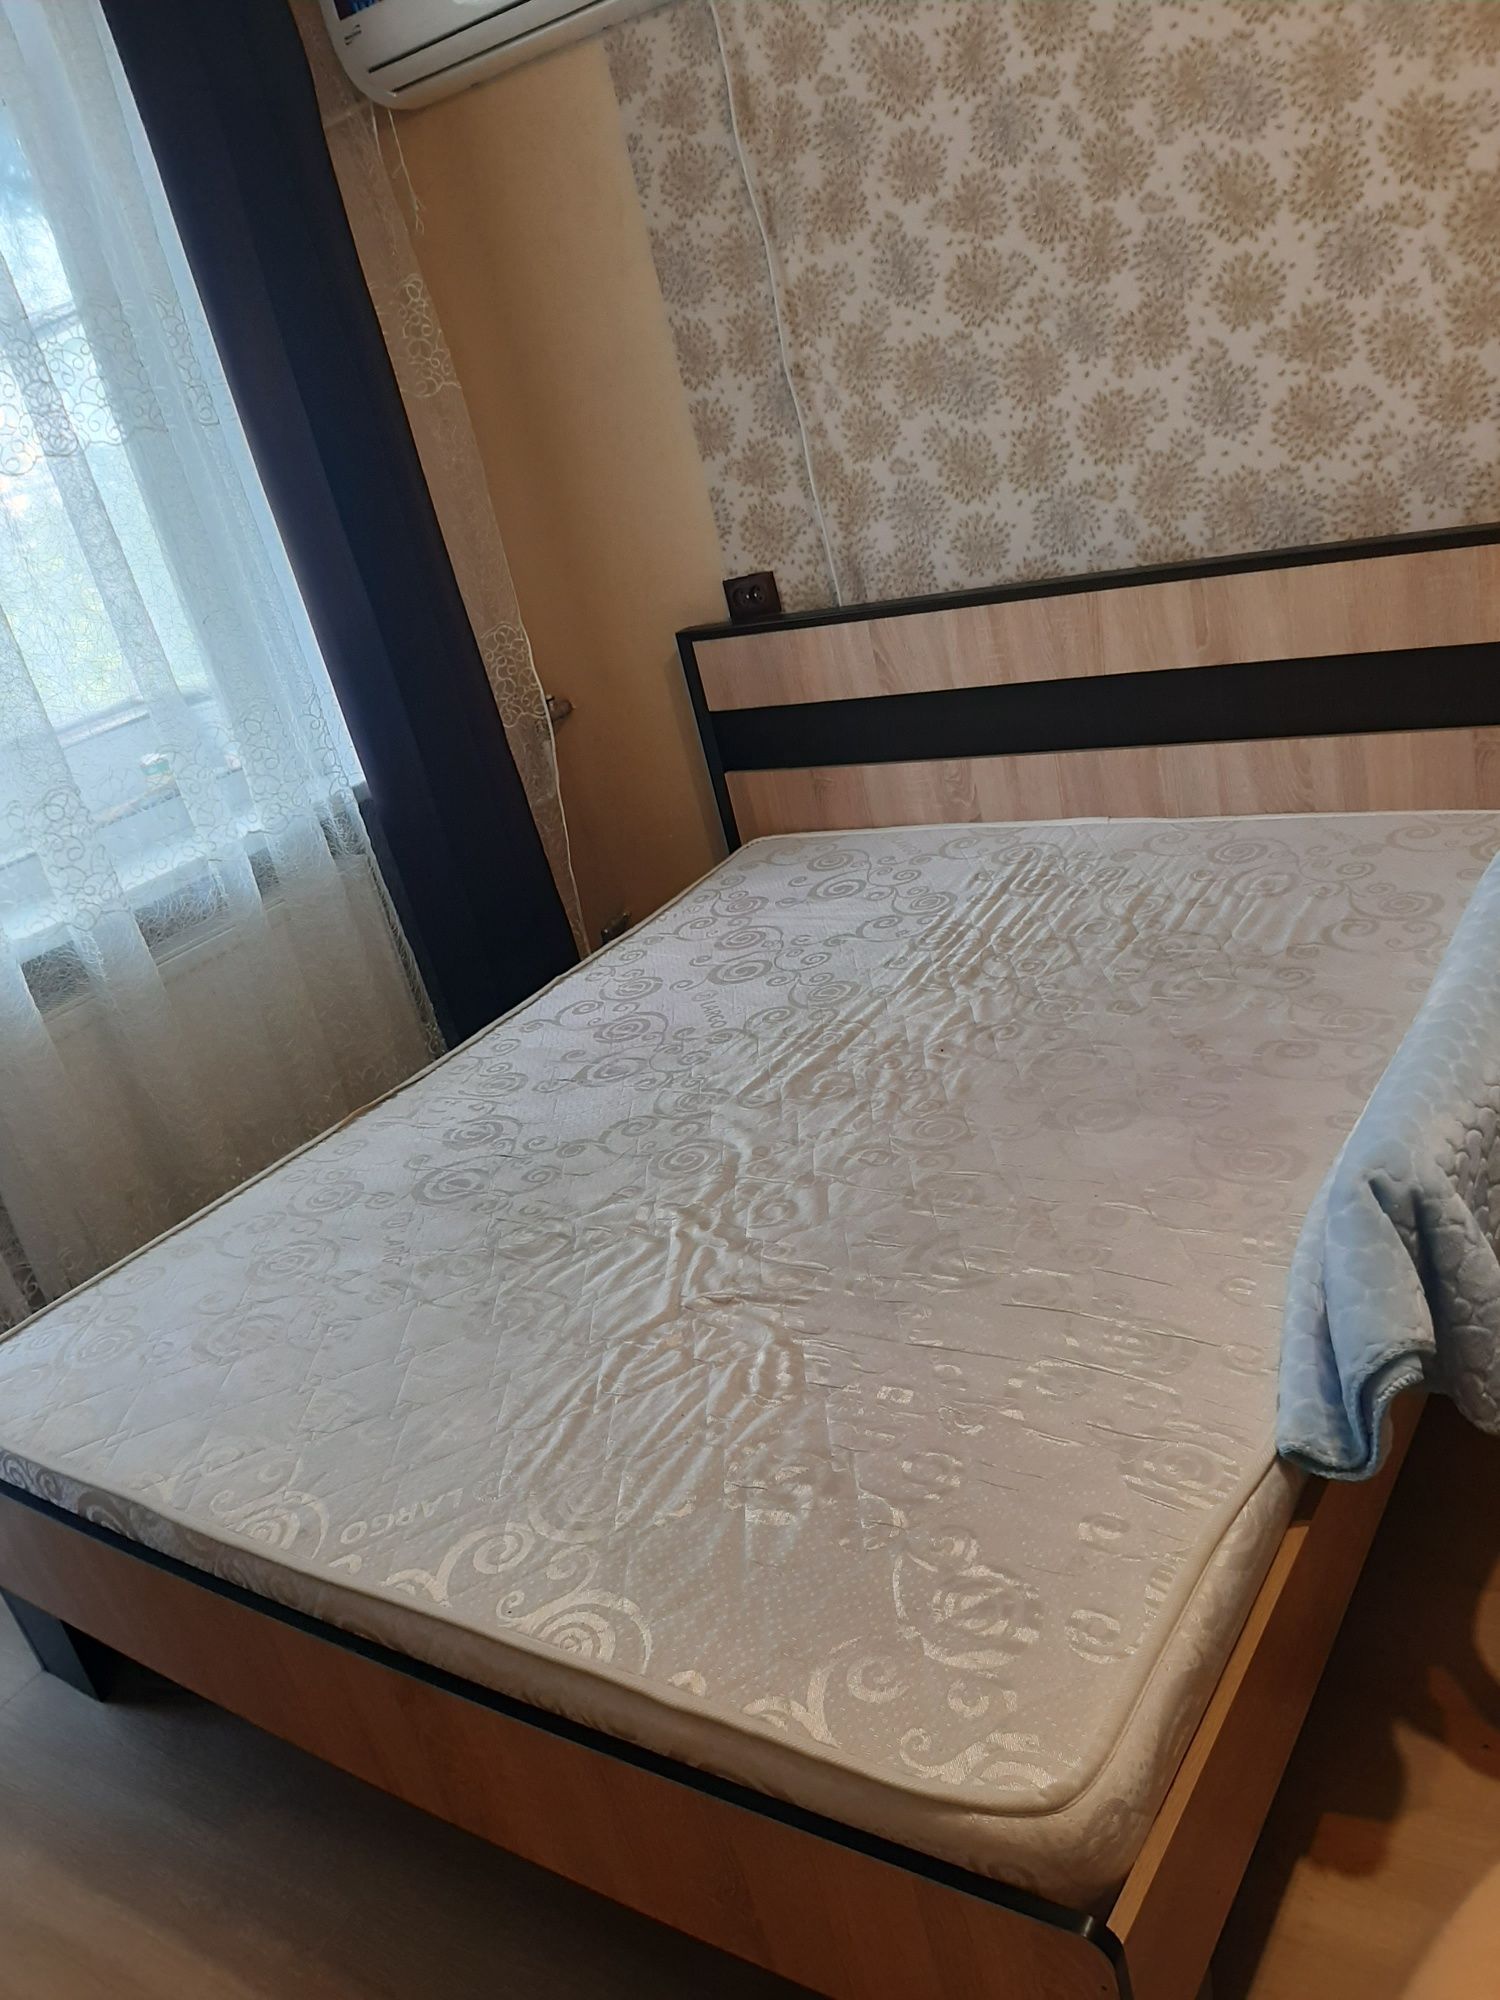 Двухспальная кровать с матрасом